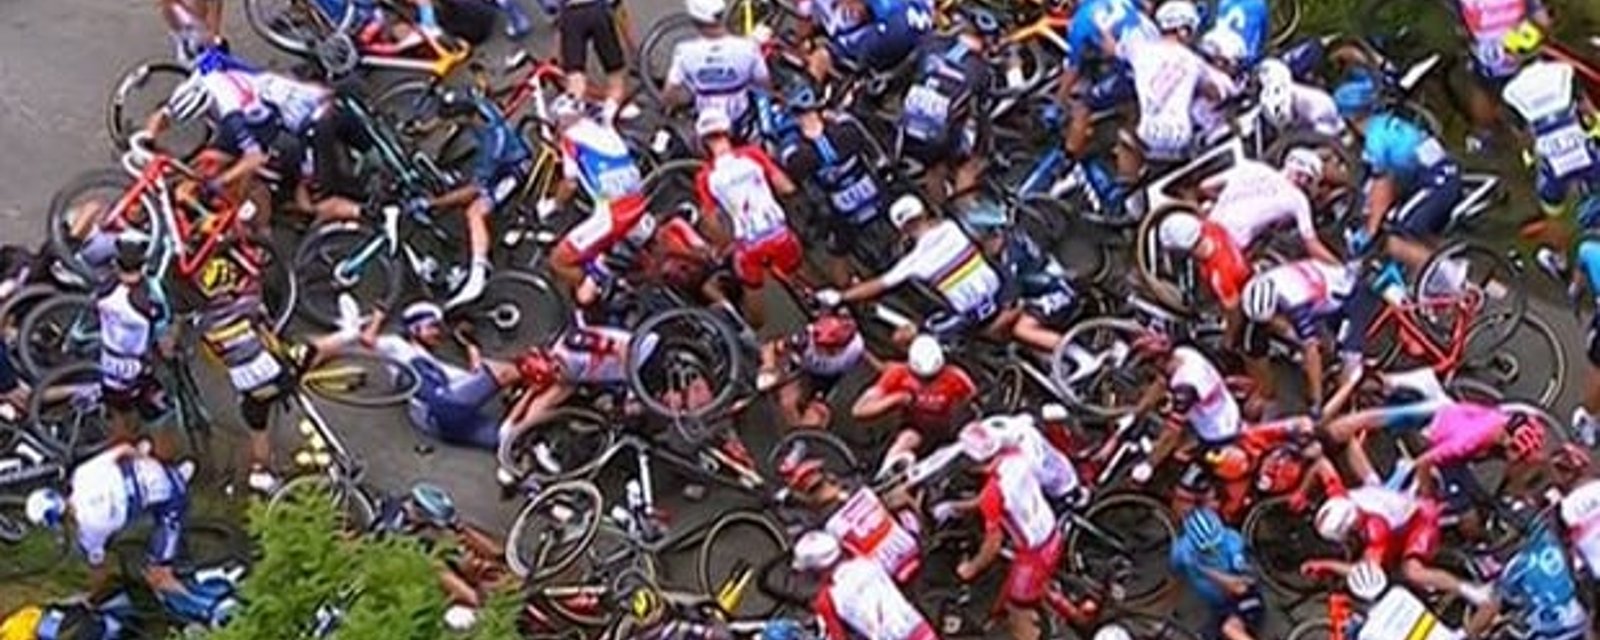 Une enquête a été ouverte contre la spectatrice qui a causé le gros accident au Tour de France